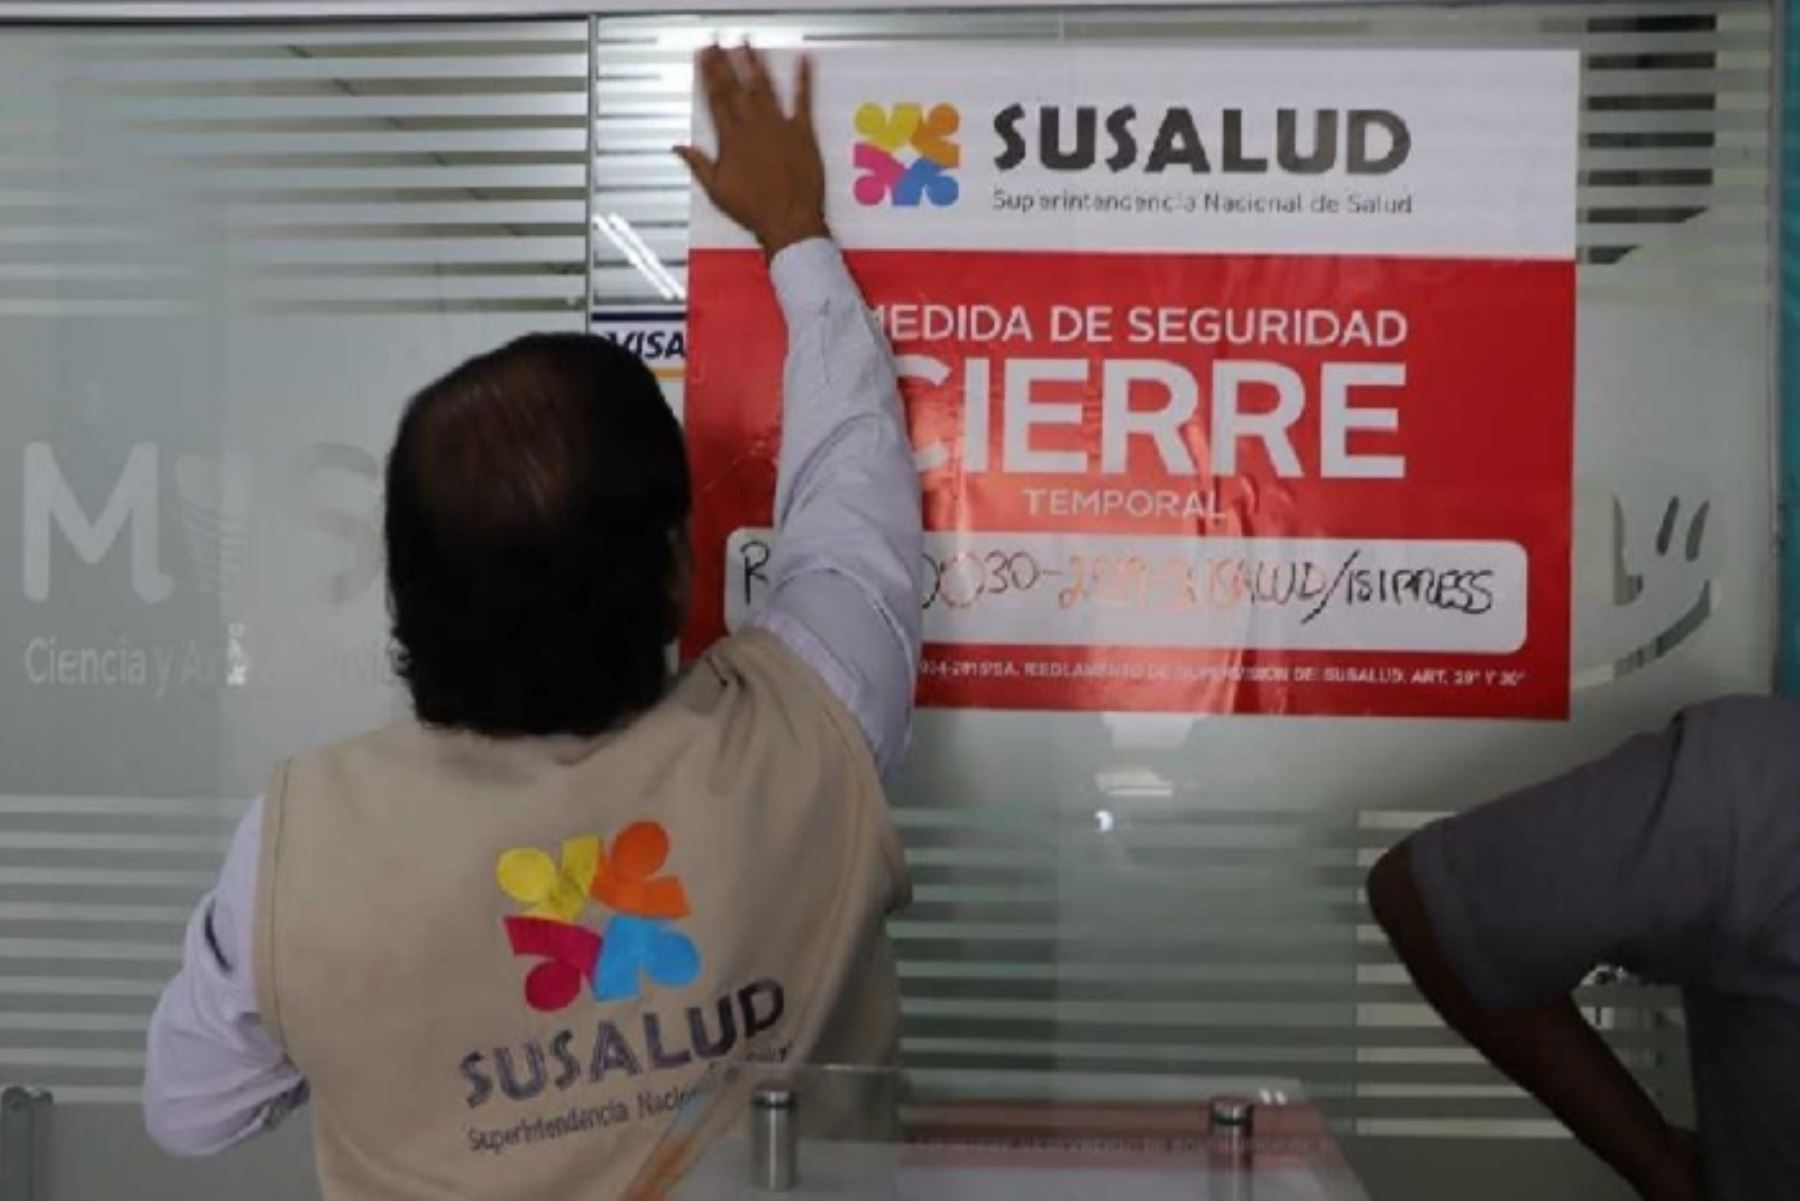 La Superintendencia Nacional de Salud (Susalud) cerró temporalmente 15 establecimientos de salud informales en la provincia y región Tacna, los cuales no brindaban las garantías de atención y seguridad para los usuarios de estos servicios.